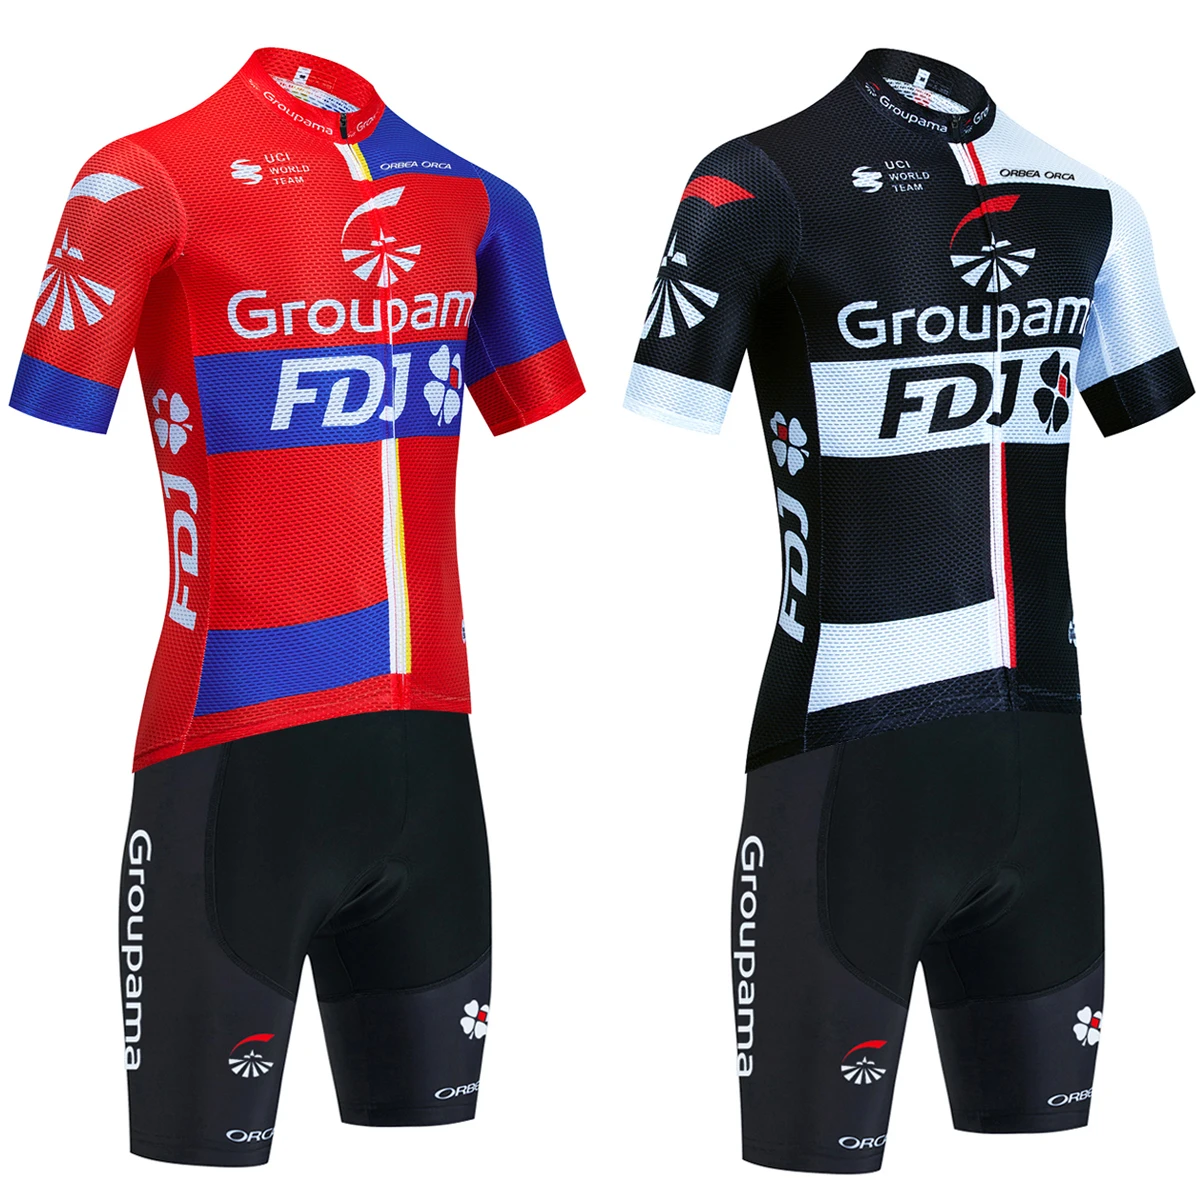 

Джерси для велоспорта Тур Франция 2023 FDJ, футболка для команды ОАЭ, велосипедная майка 20D, шорты мужские ORBEA орка Ropa Ciclismo, комплект велосипедной одежды